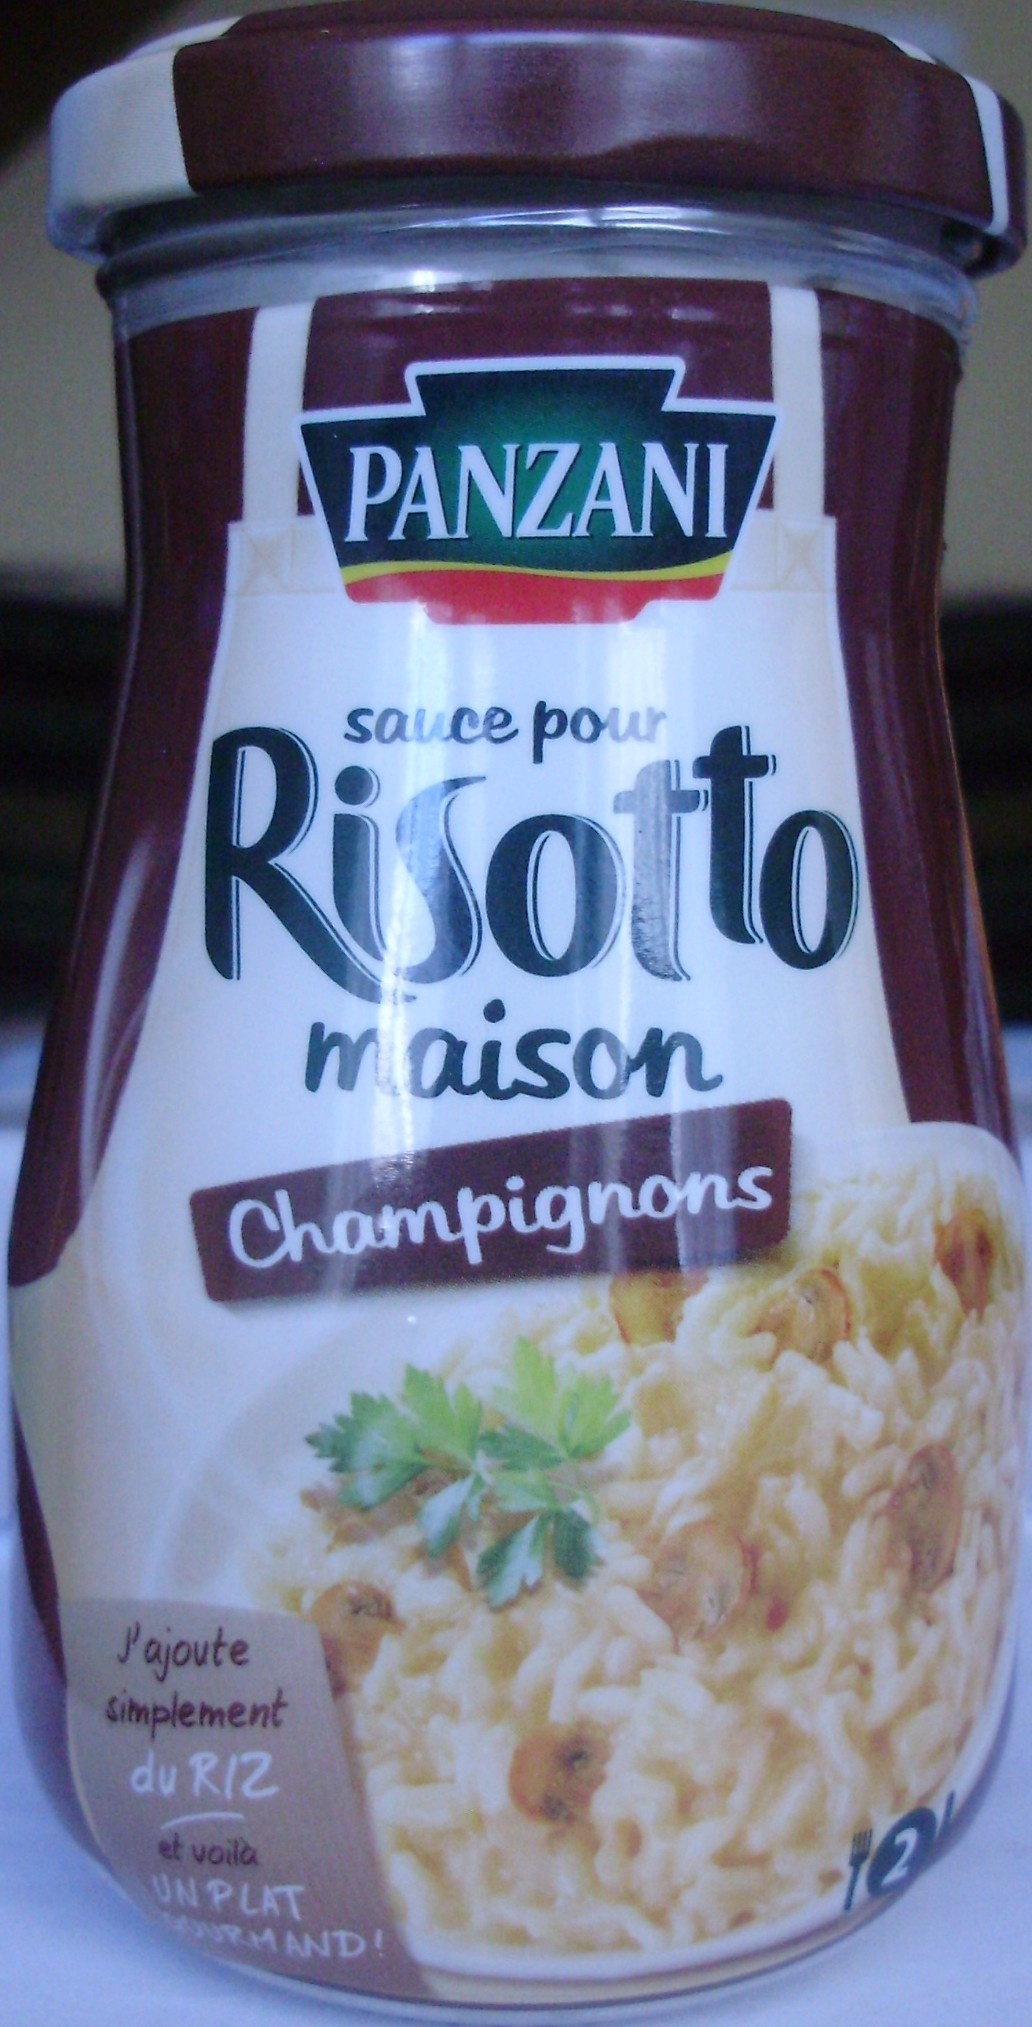 Sauce pour Risotto maison Champignons - Product - fr